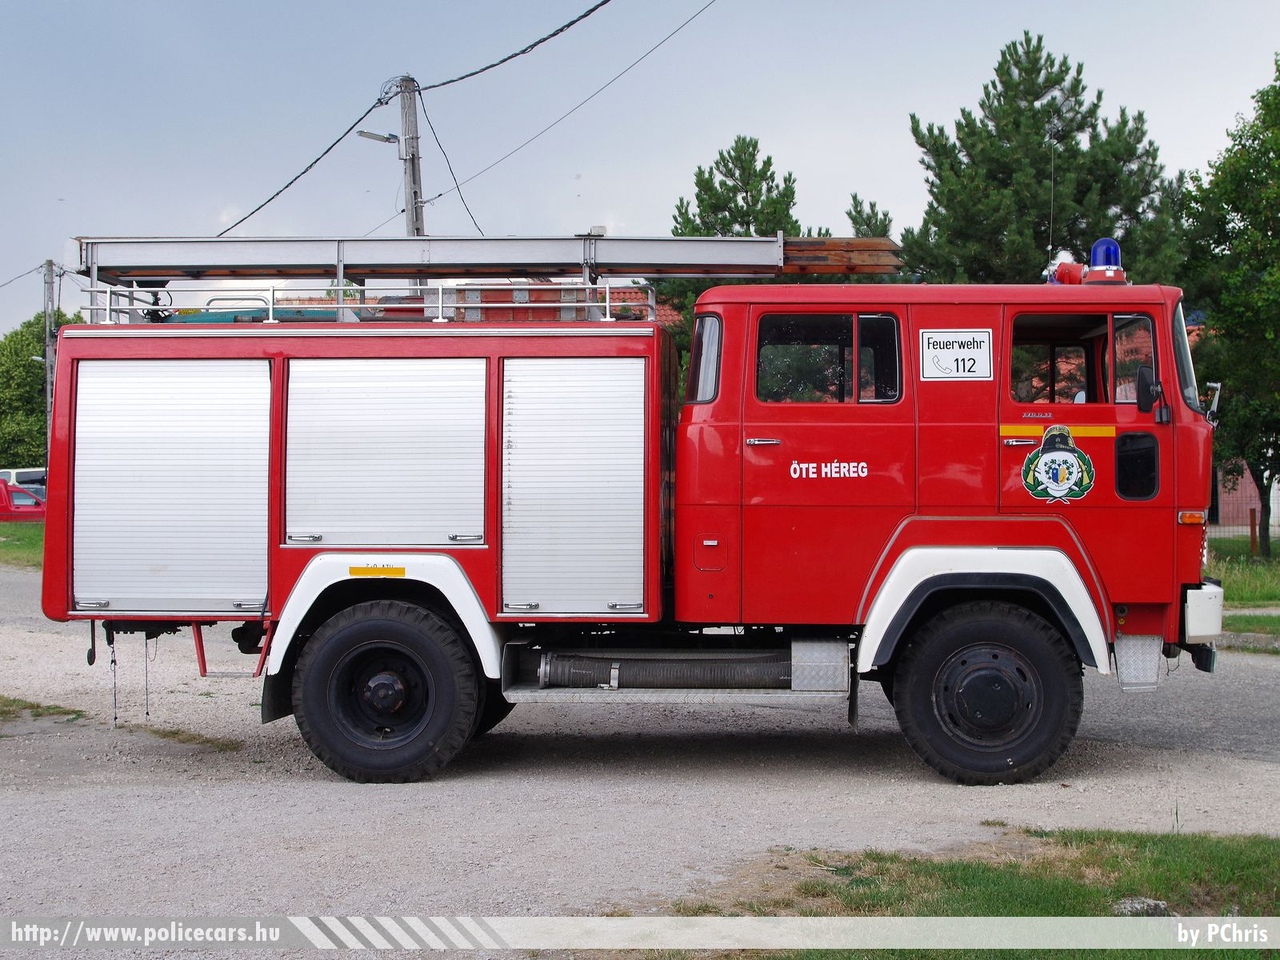 Magirus-Deutz 170D11, Héregi Önkéntes Tűzoltó Egyesület, fotó: PChris
Keywords: ÖTE magyar Magyarország tûzoltó tûzoltóautó tûzoltóság Hungary hungarian fire firetruck HUX-158